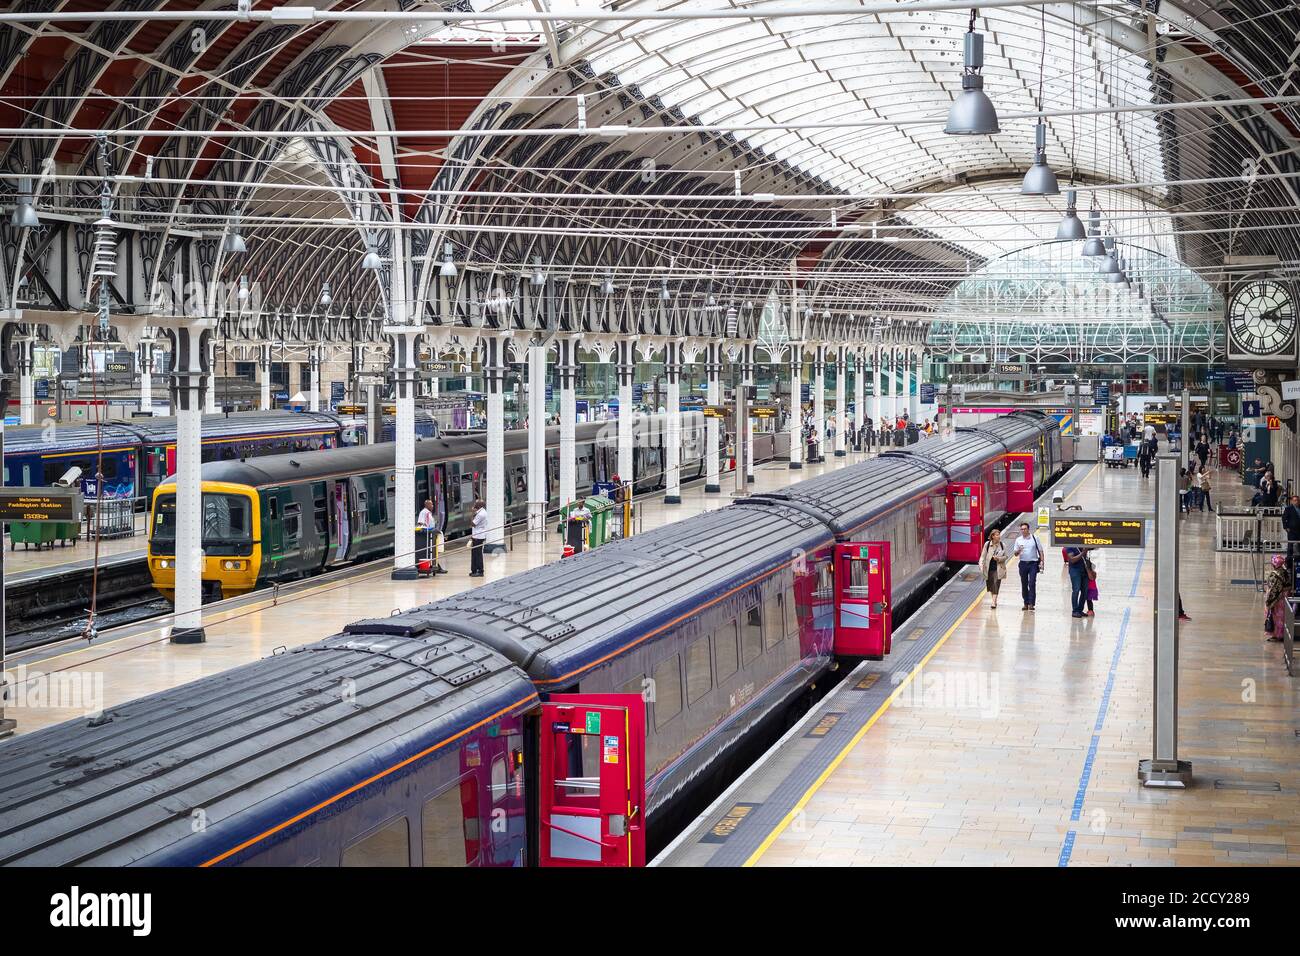 Londres, Royaume-Uni - 17 avril 2019 - Paddington Station, une célèbre gare ferroviaire dans le centre de Londres Banque D'Images